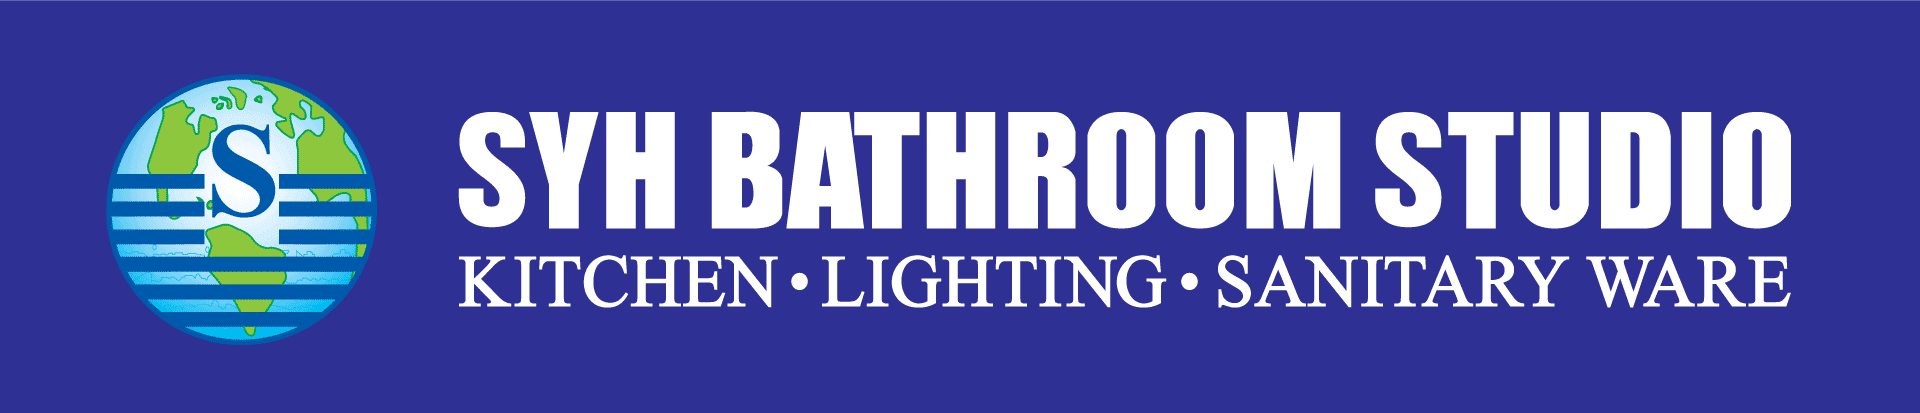 syhbathroom_logo